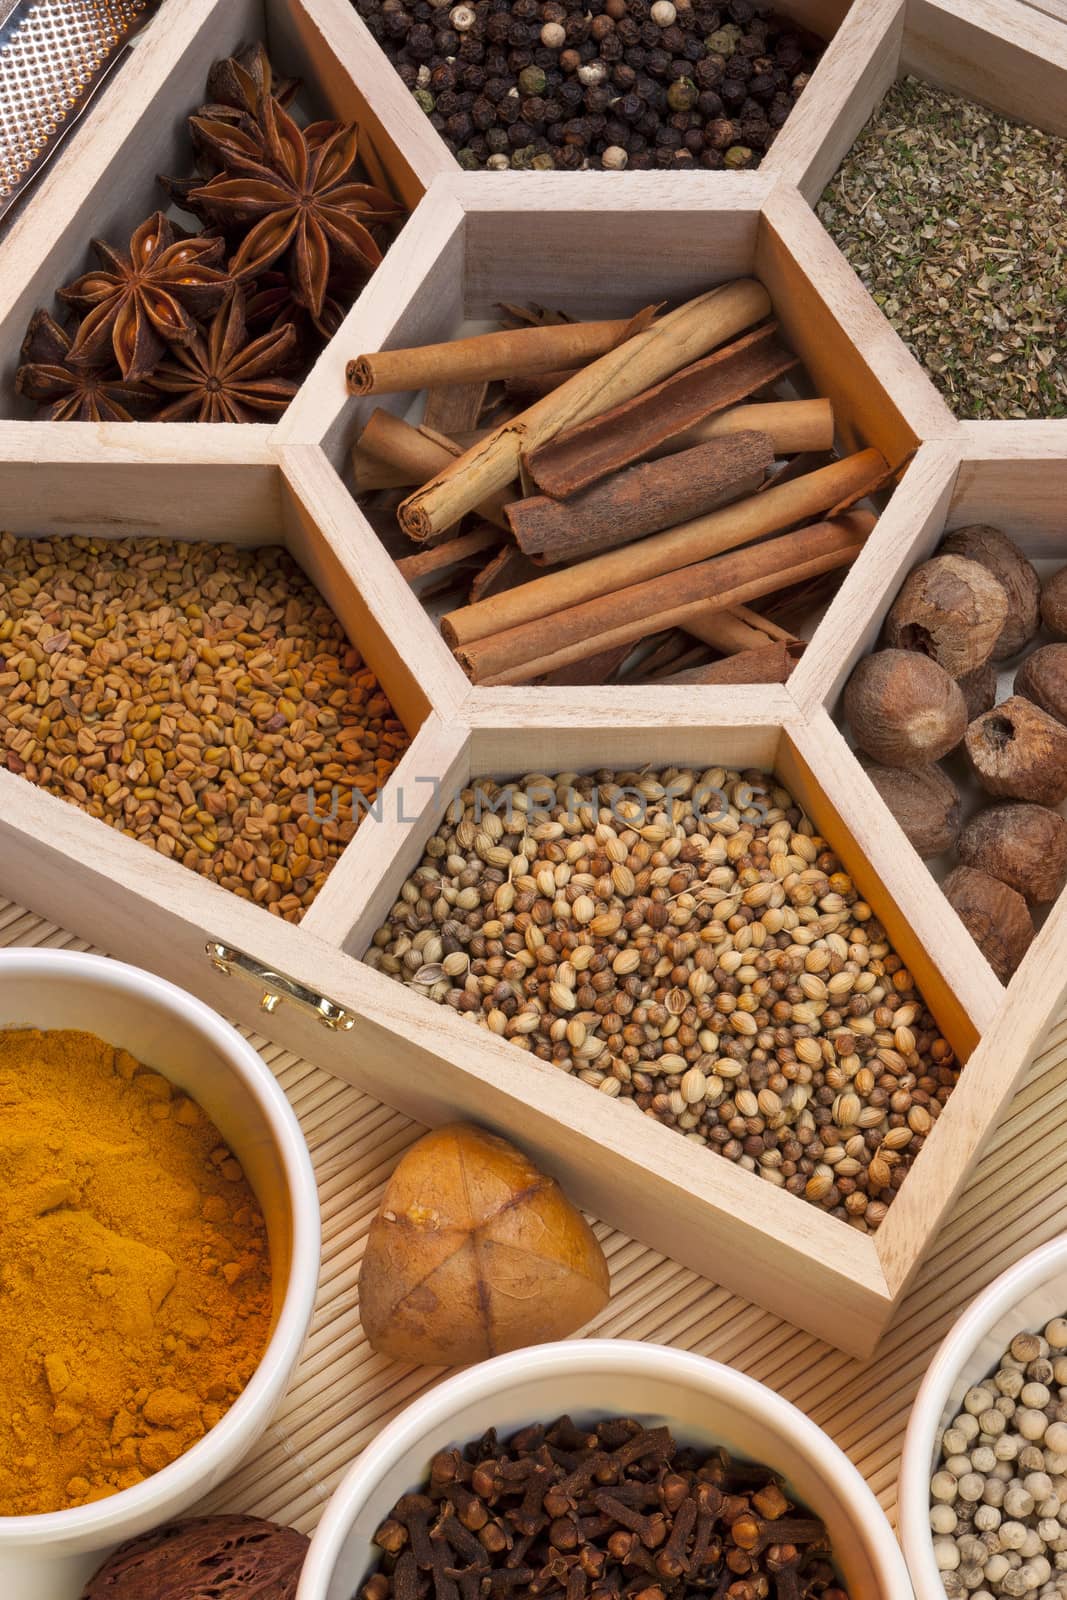 Fragrant Spices - Dill Seeds, Cinnamon, Cloves, Nutmeg, Turmeric, White Pepper, Star Anise, Black Pepper, Coriander Seeds.